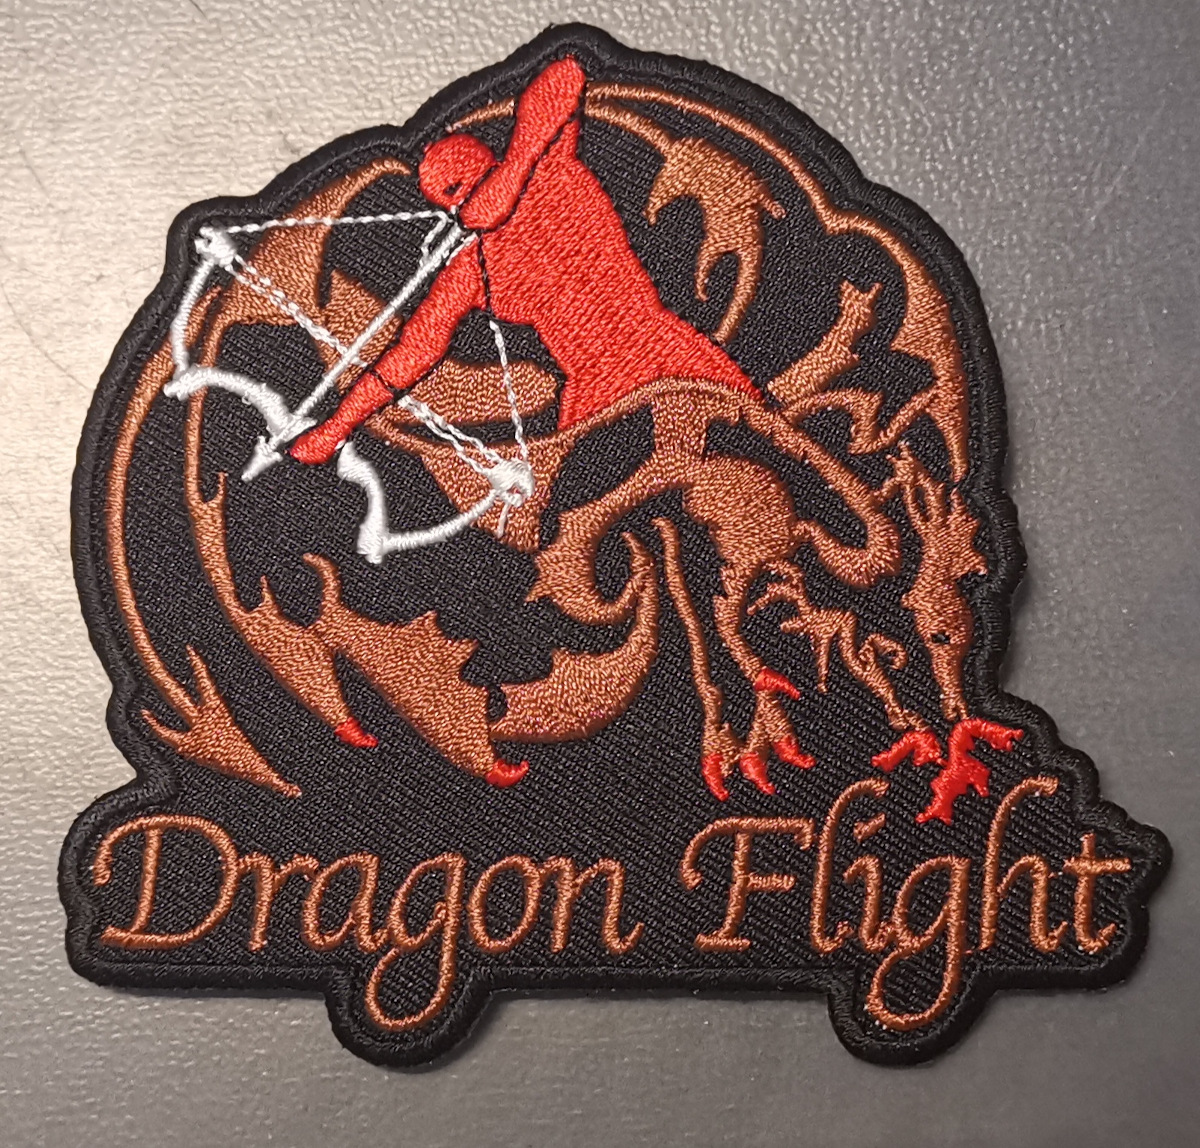 Canadá: visita a Dragonflight Archery en Alberta